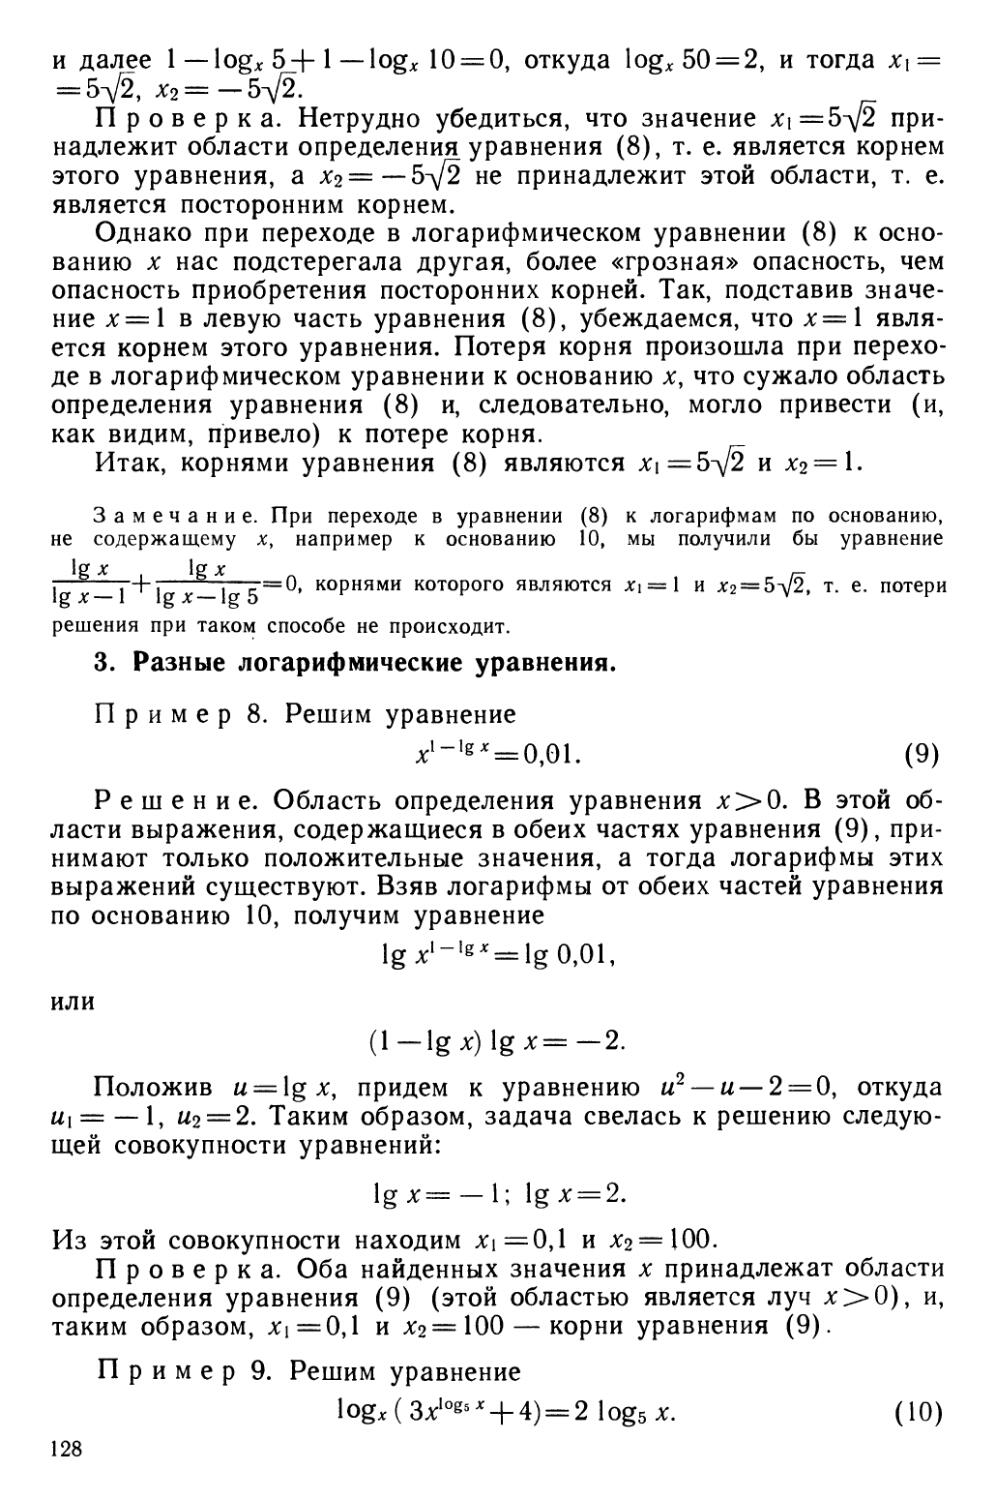 п. 3. Разные логарифмические уравнения